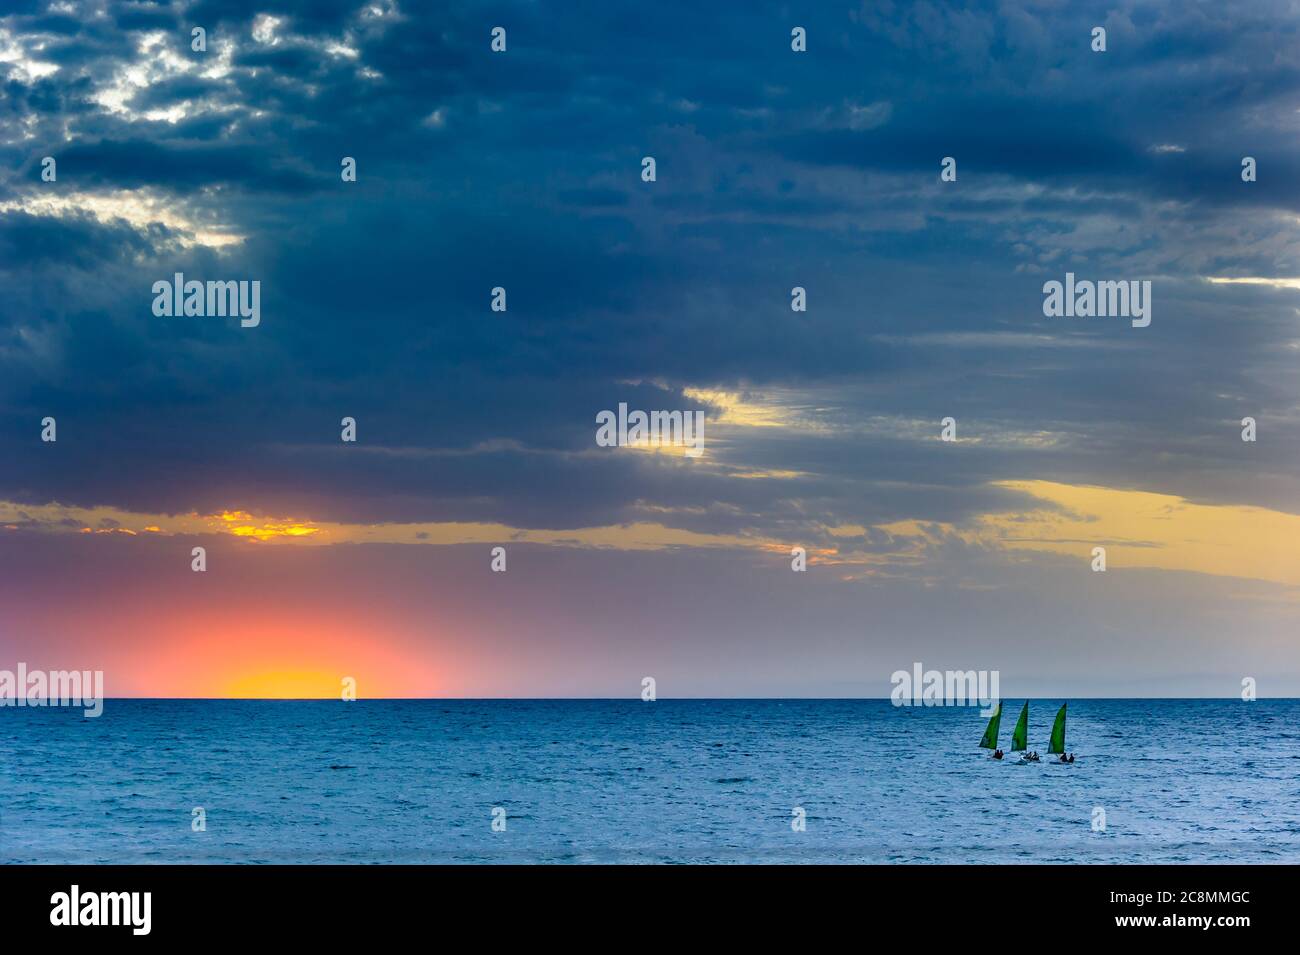 Goldener Sonnenuntergang am wunderschönen Brighton Beach in Adelaide, Südaustralien, während drei Segelboote sich auf den Sonnenuntergang am südlichen Ozean zubewegen. Stockfoto